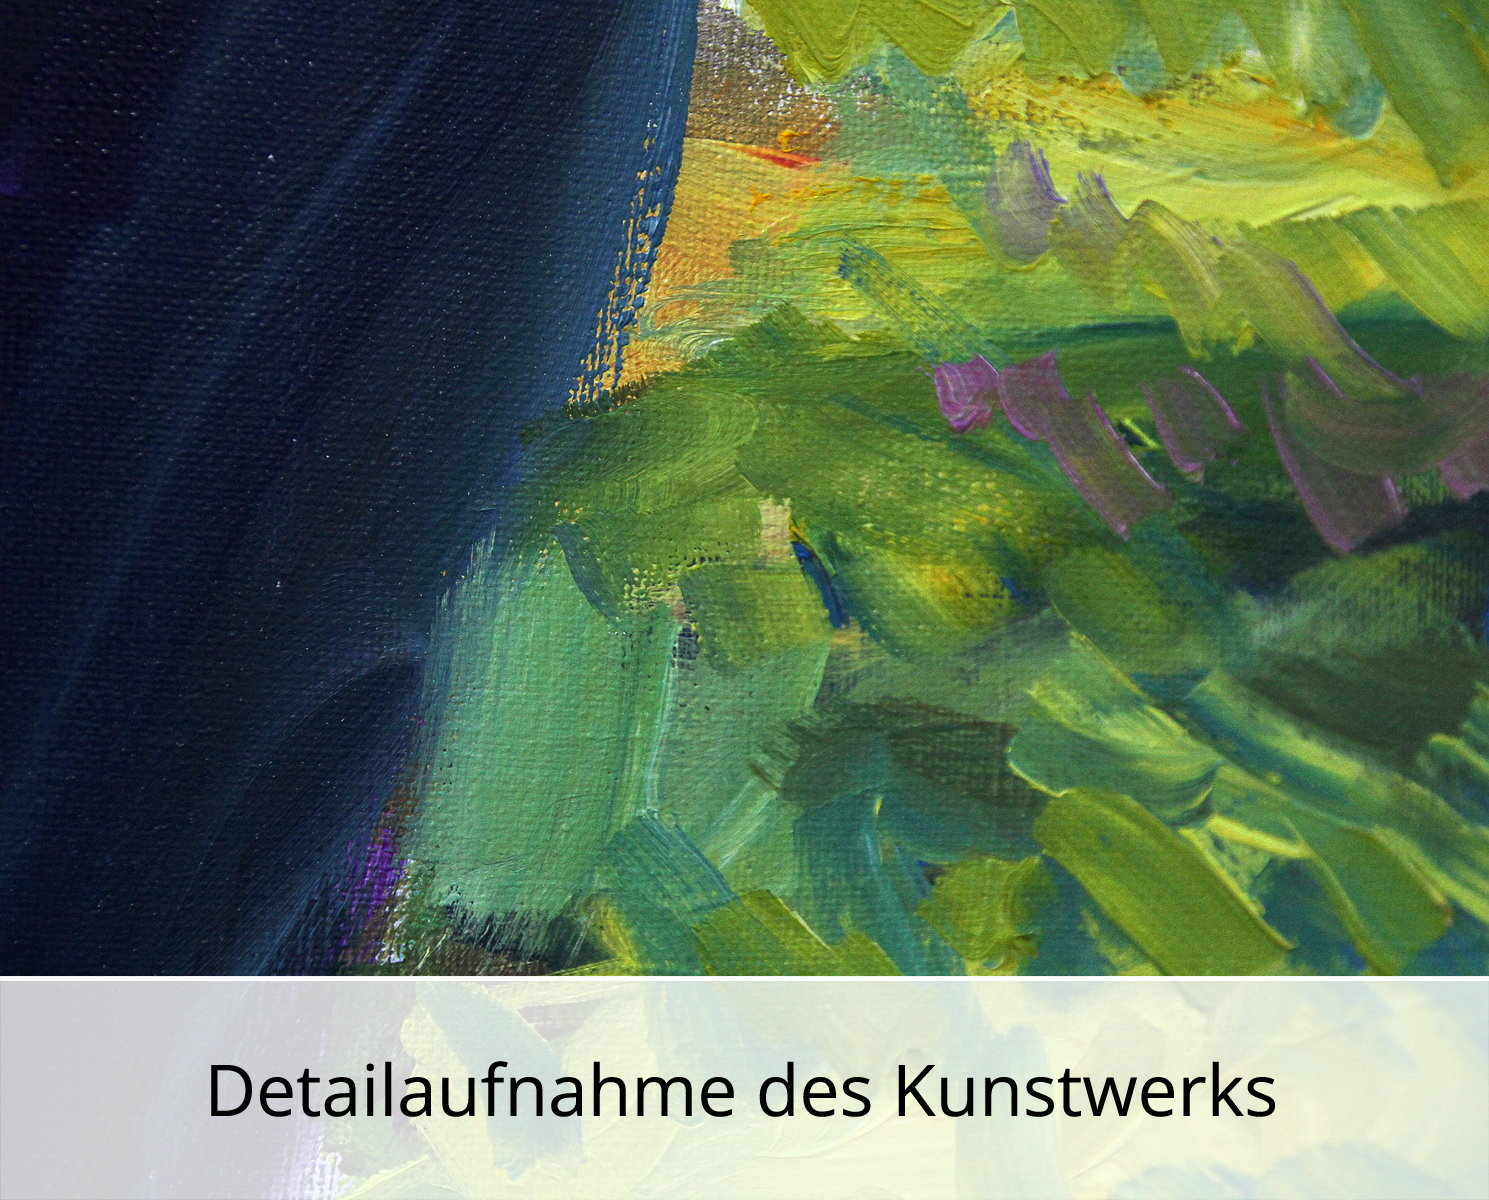 M. Cieśla: "Landschaft, Toskana XI", Expressionistisches Ölgemälde, Original/Unikat